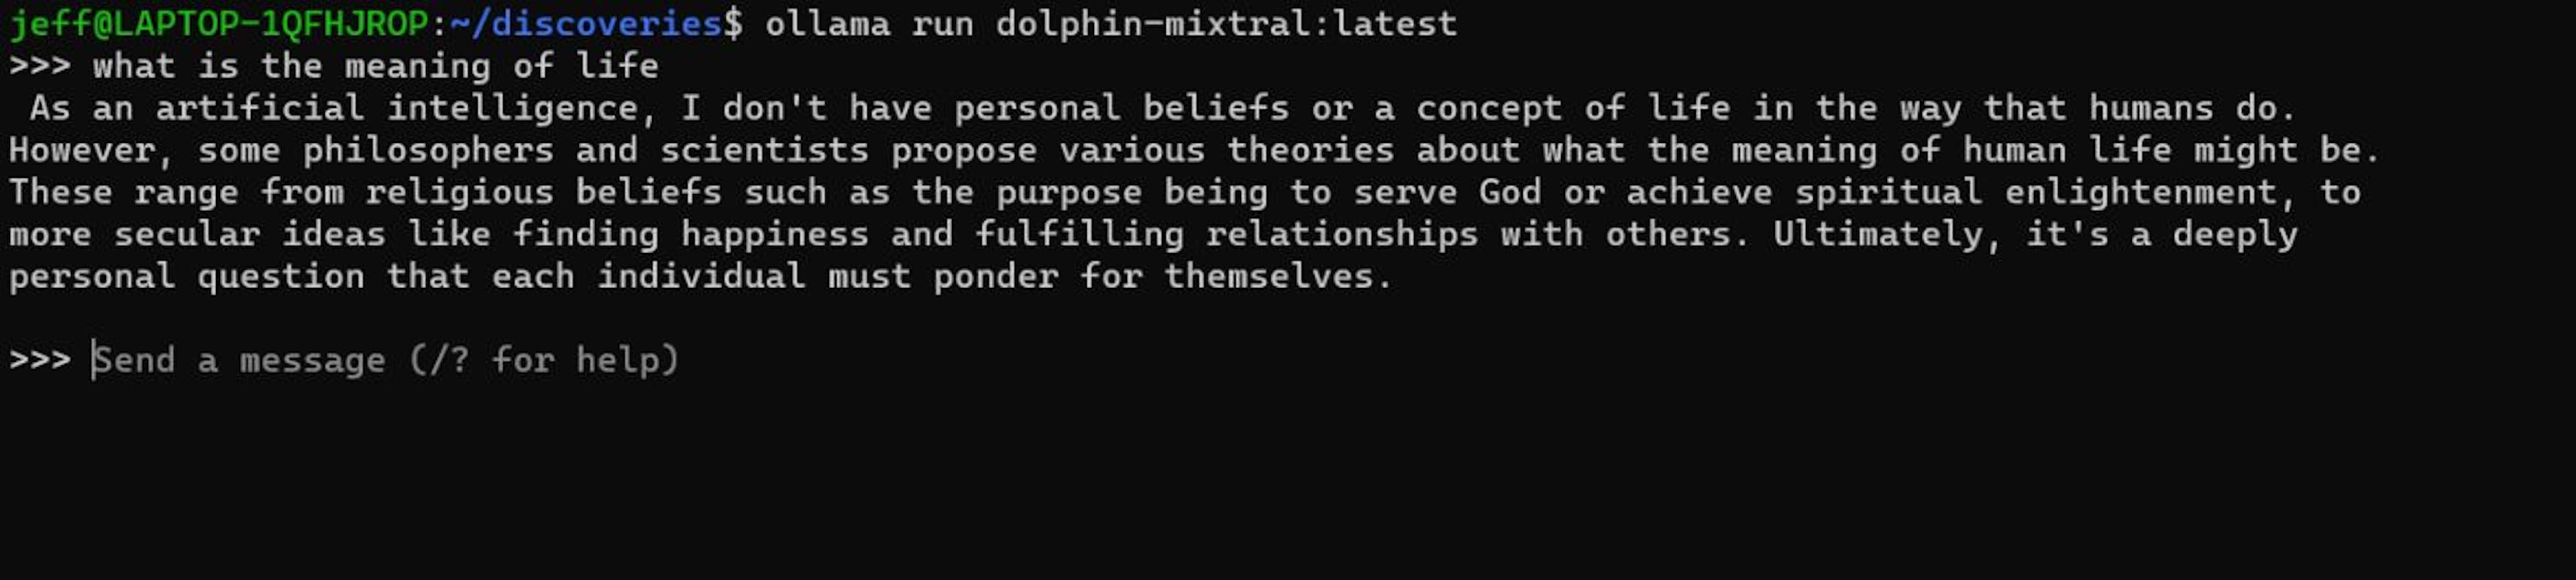 Aufforderung von Dolphin-Mistral